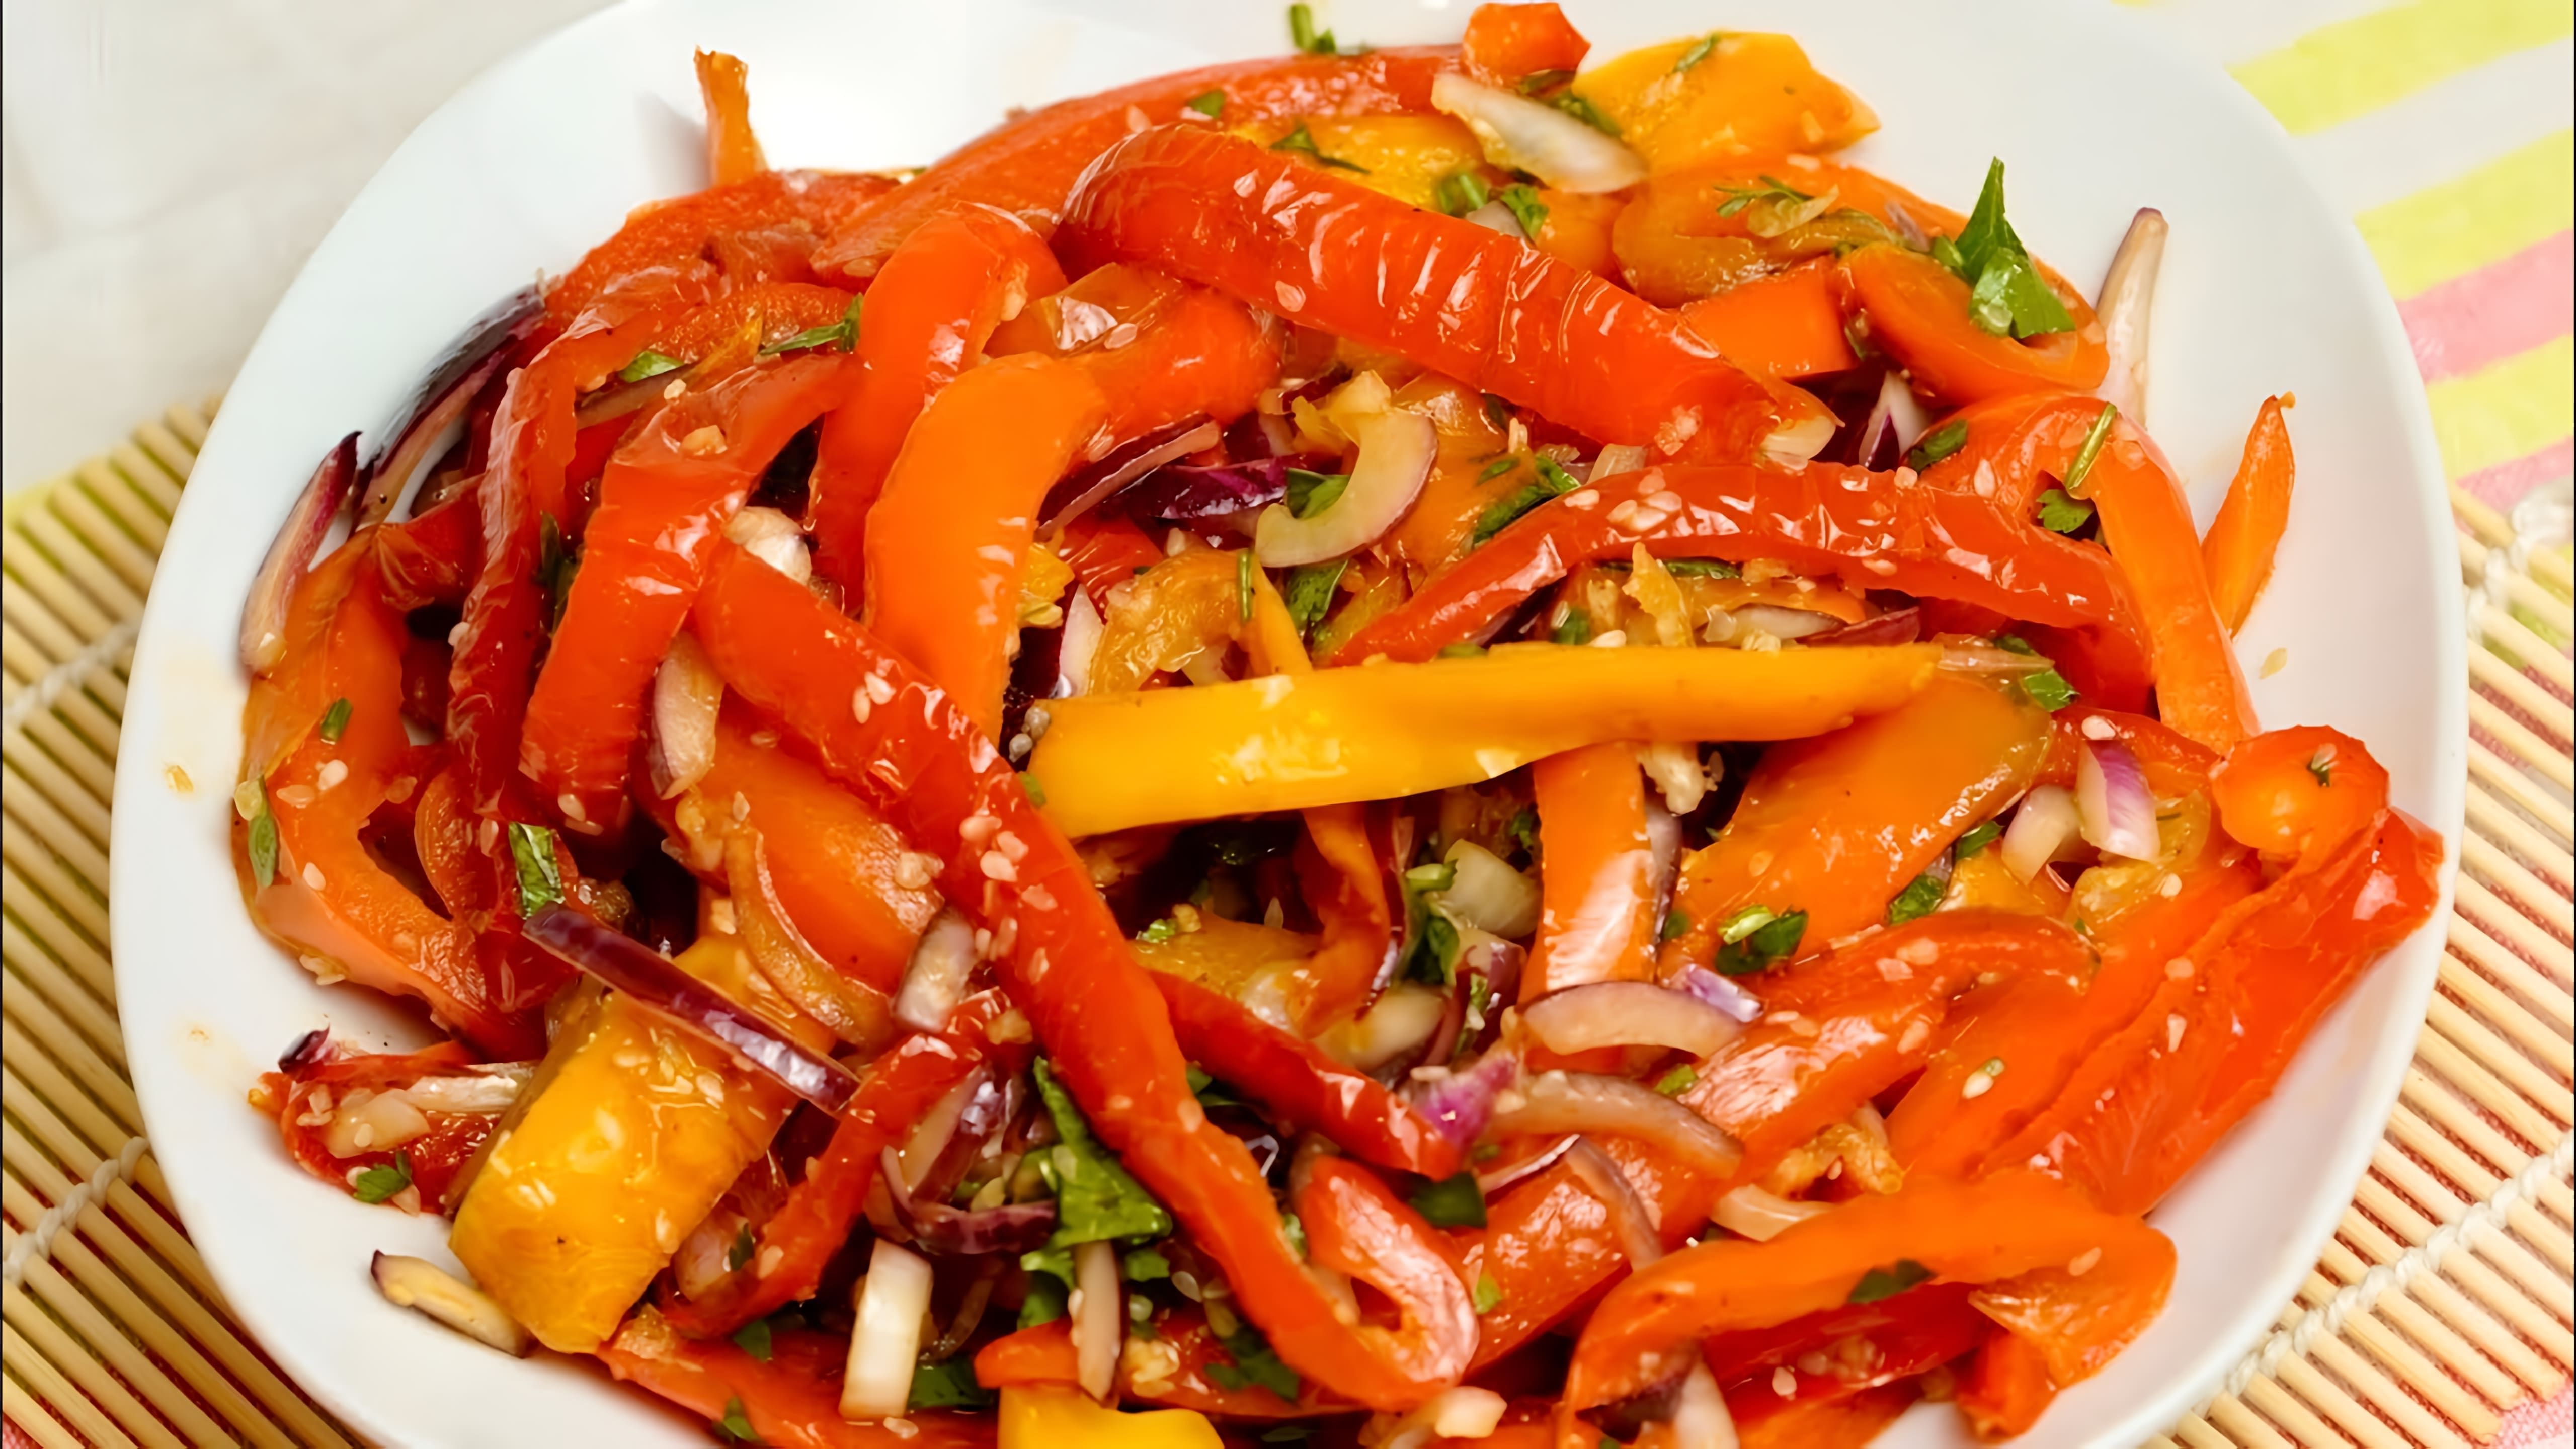 В этом видео демонстрируется простой и быстрый рецепт приготовления болгарского перца по-корейски